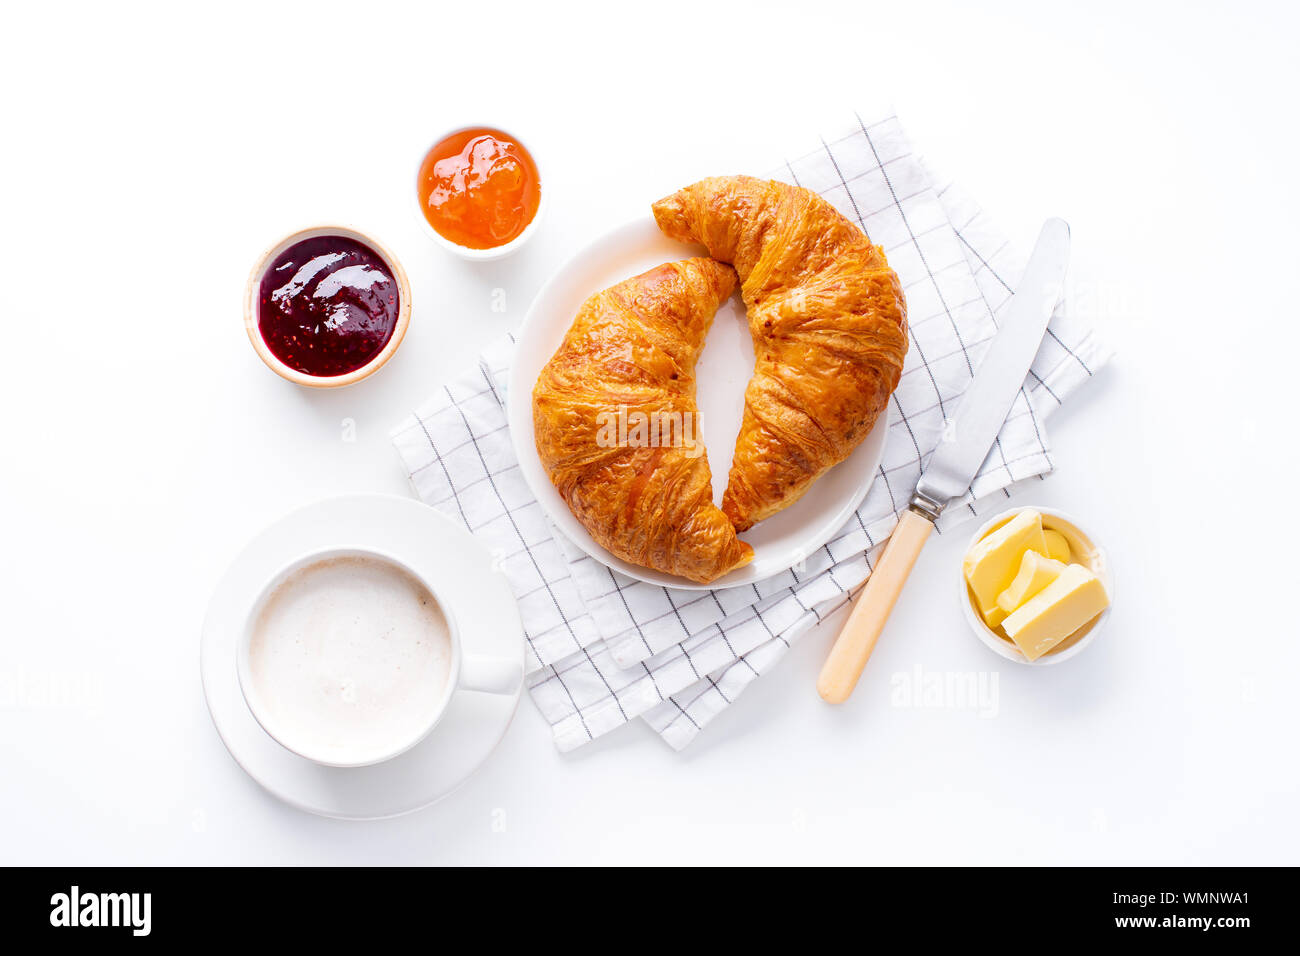 Vue d'en haut flatlay avec croissants frais servis avec des confitures, beurre et café. Concept de repas du matin. Fond blanc Banque D'Images